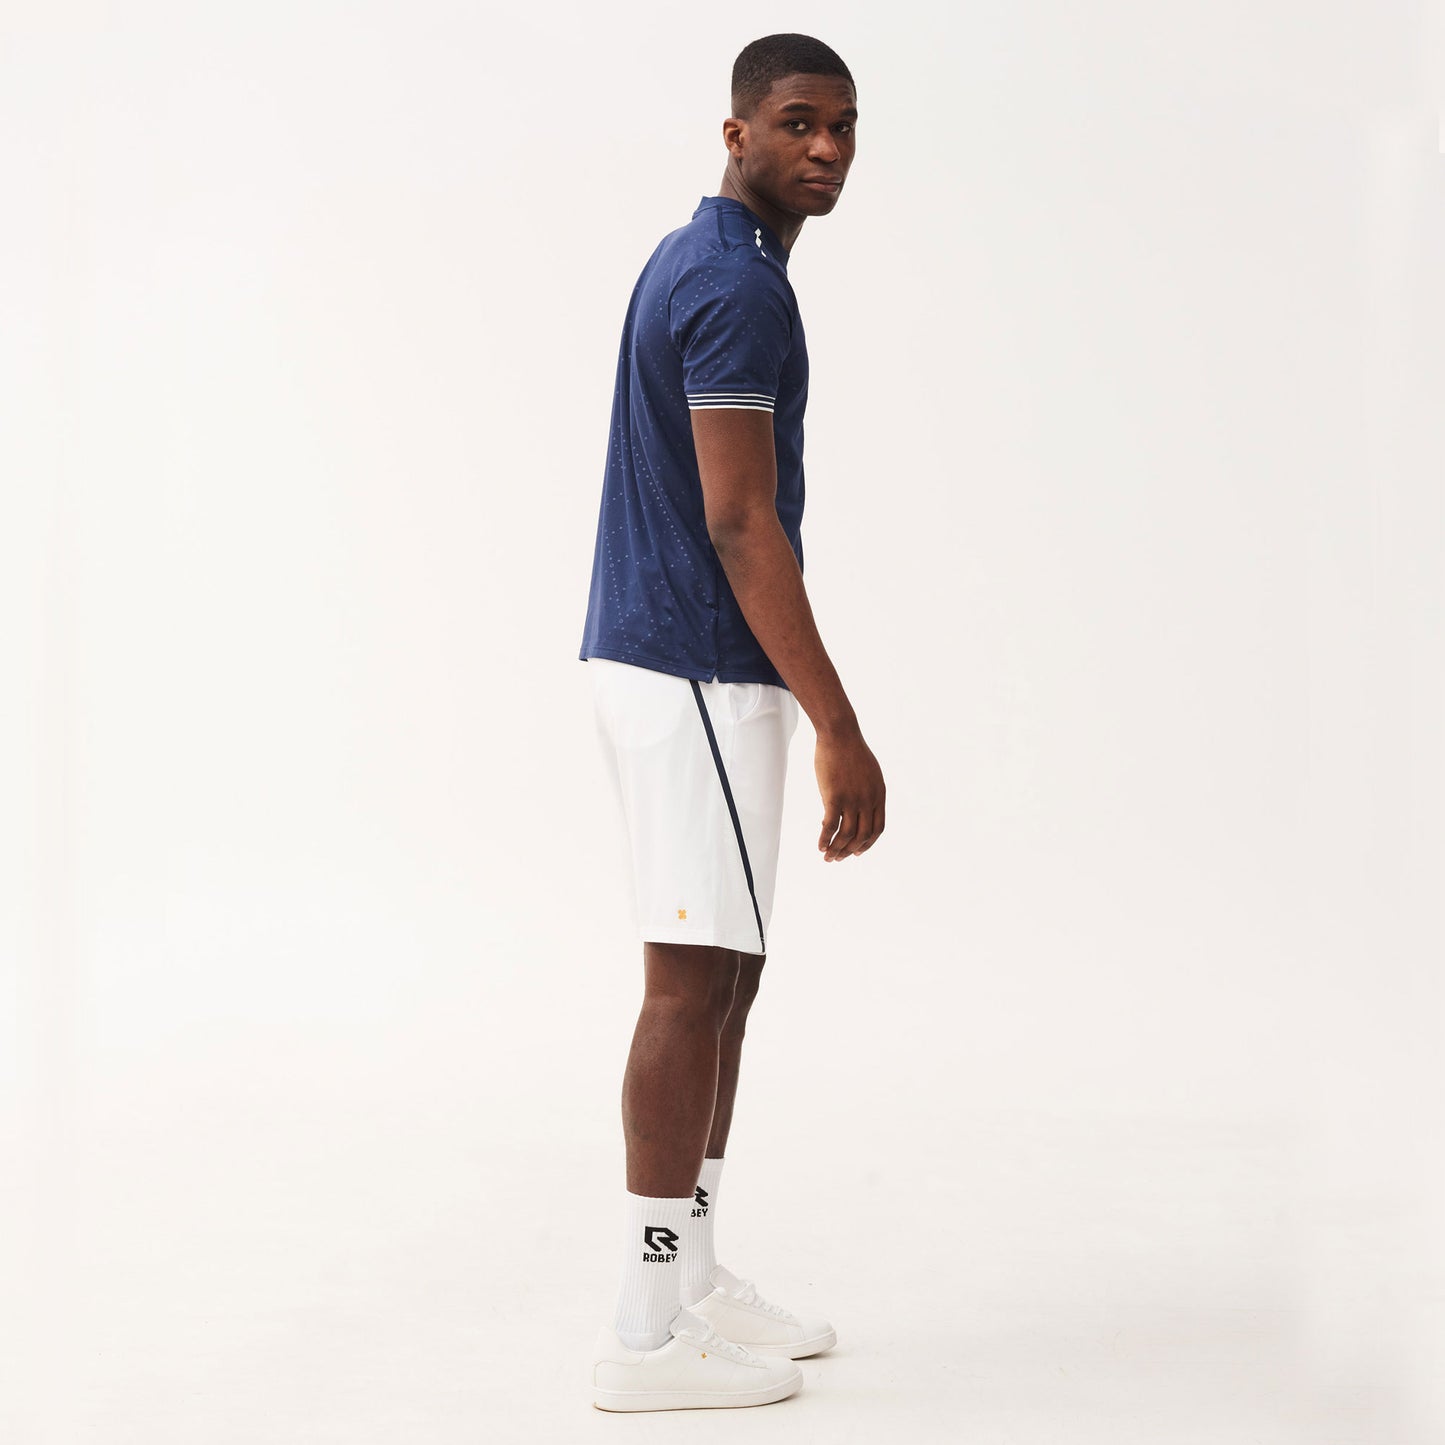 Robey Grip Men's 9-Inch Tennis Shorts White/Dark Blue (3)